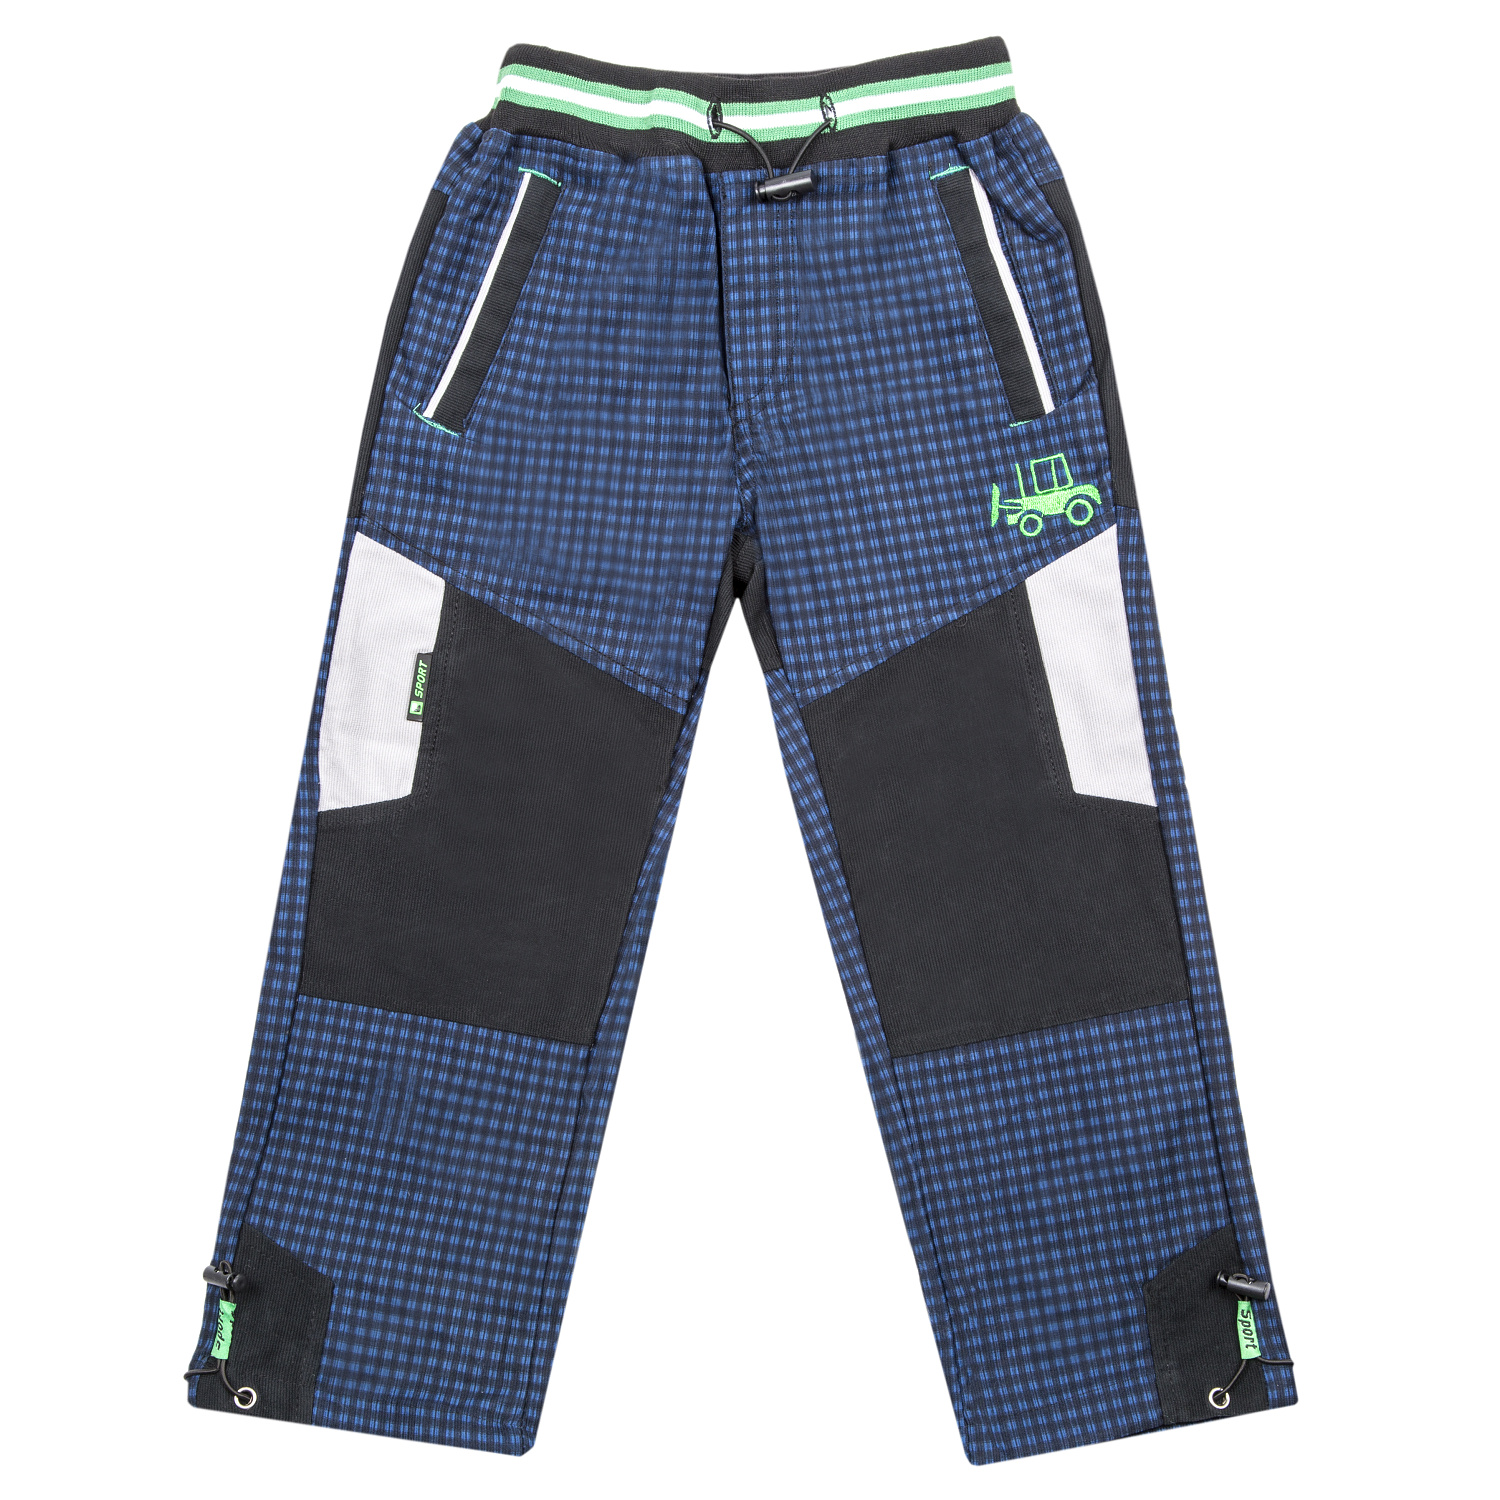 Chlapecké outdoorové kalhoty - GRACE B-84267, modrá Barva: Modrá, Velikost: 98